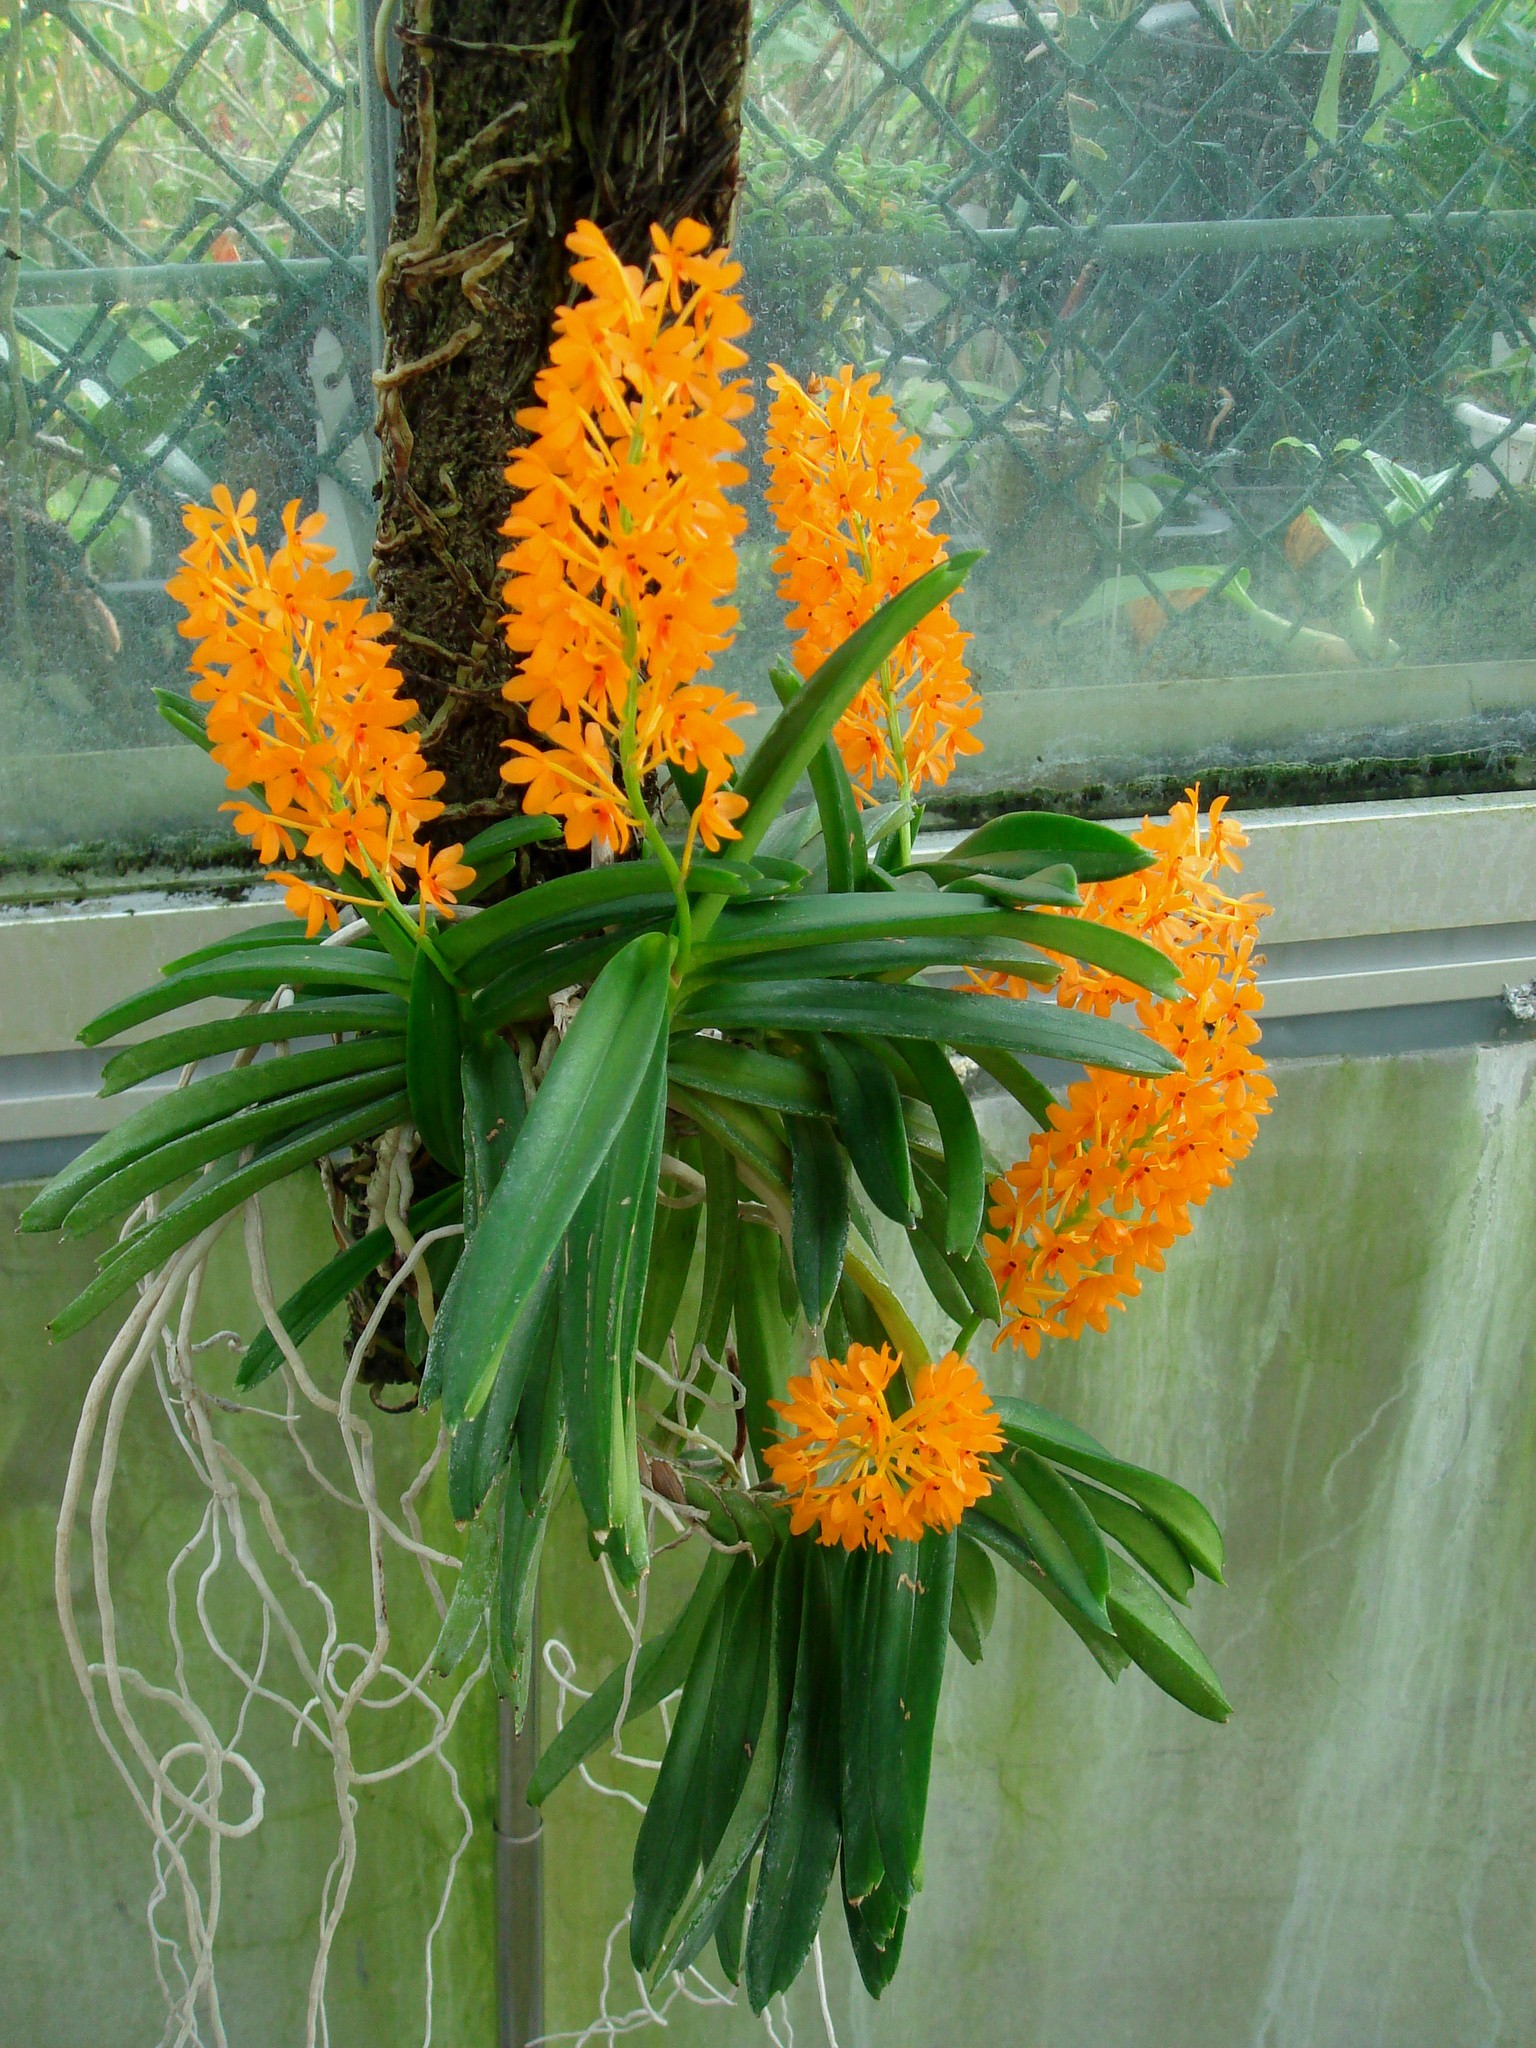 http://orchids.la.coocan.jp/Ascocentrum/Ascocentrum%20garayi/DSC01348.JPG